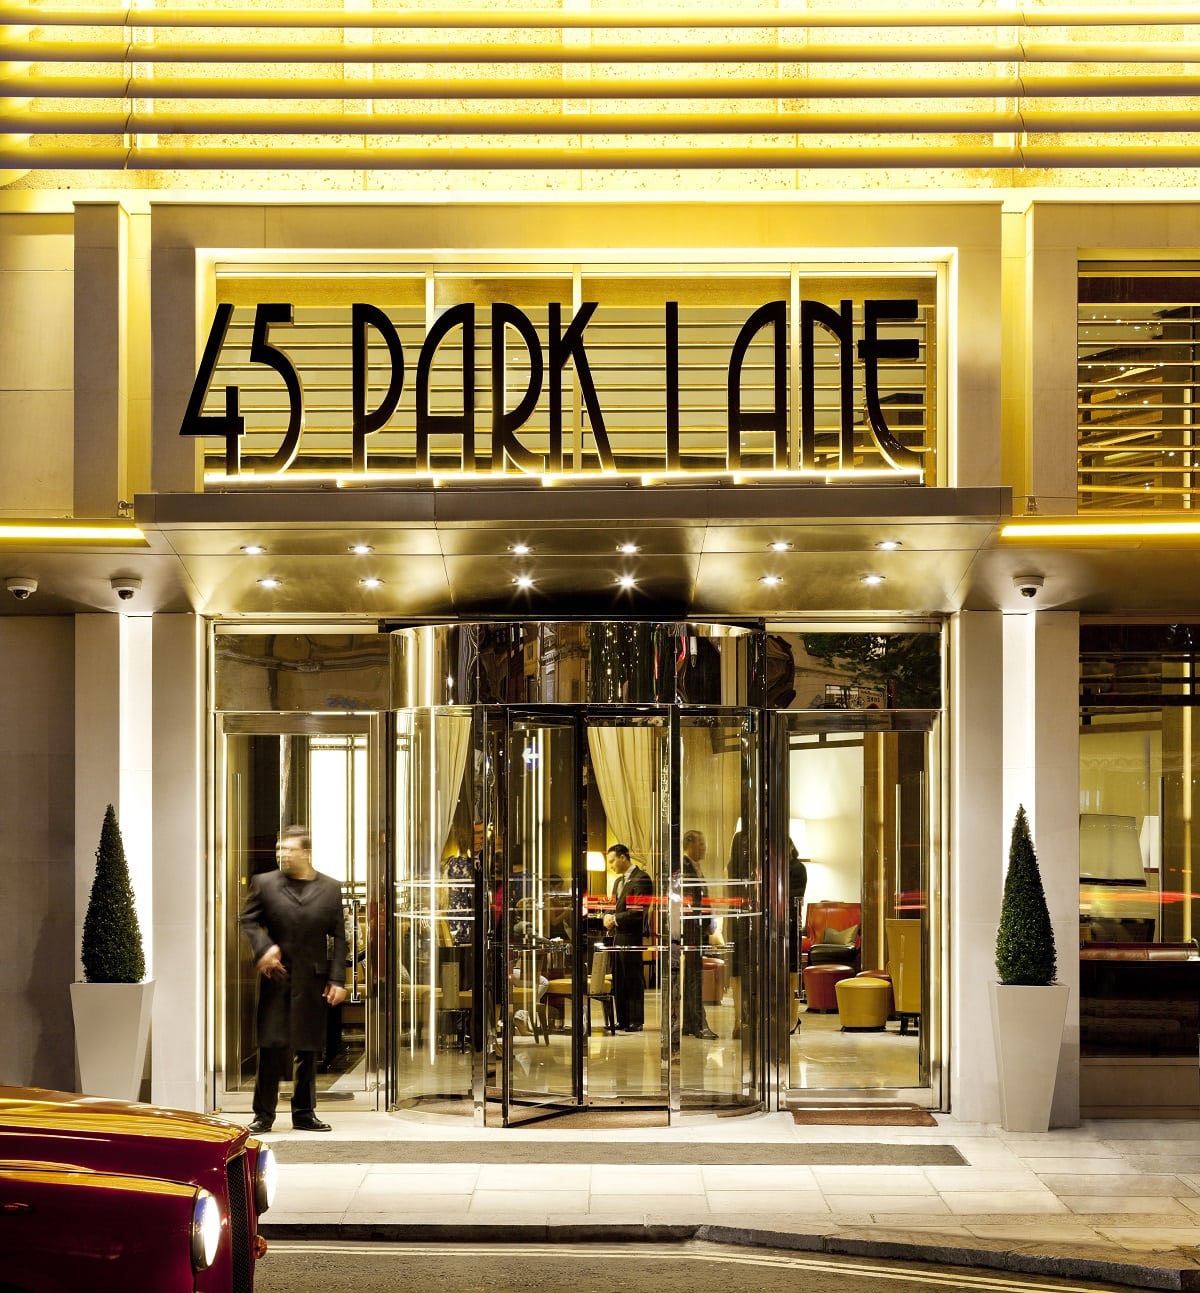 45 Park Lane Entrance- Adam Parker-min